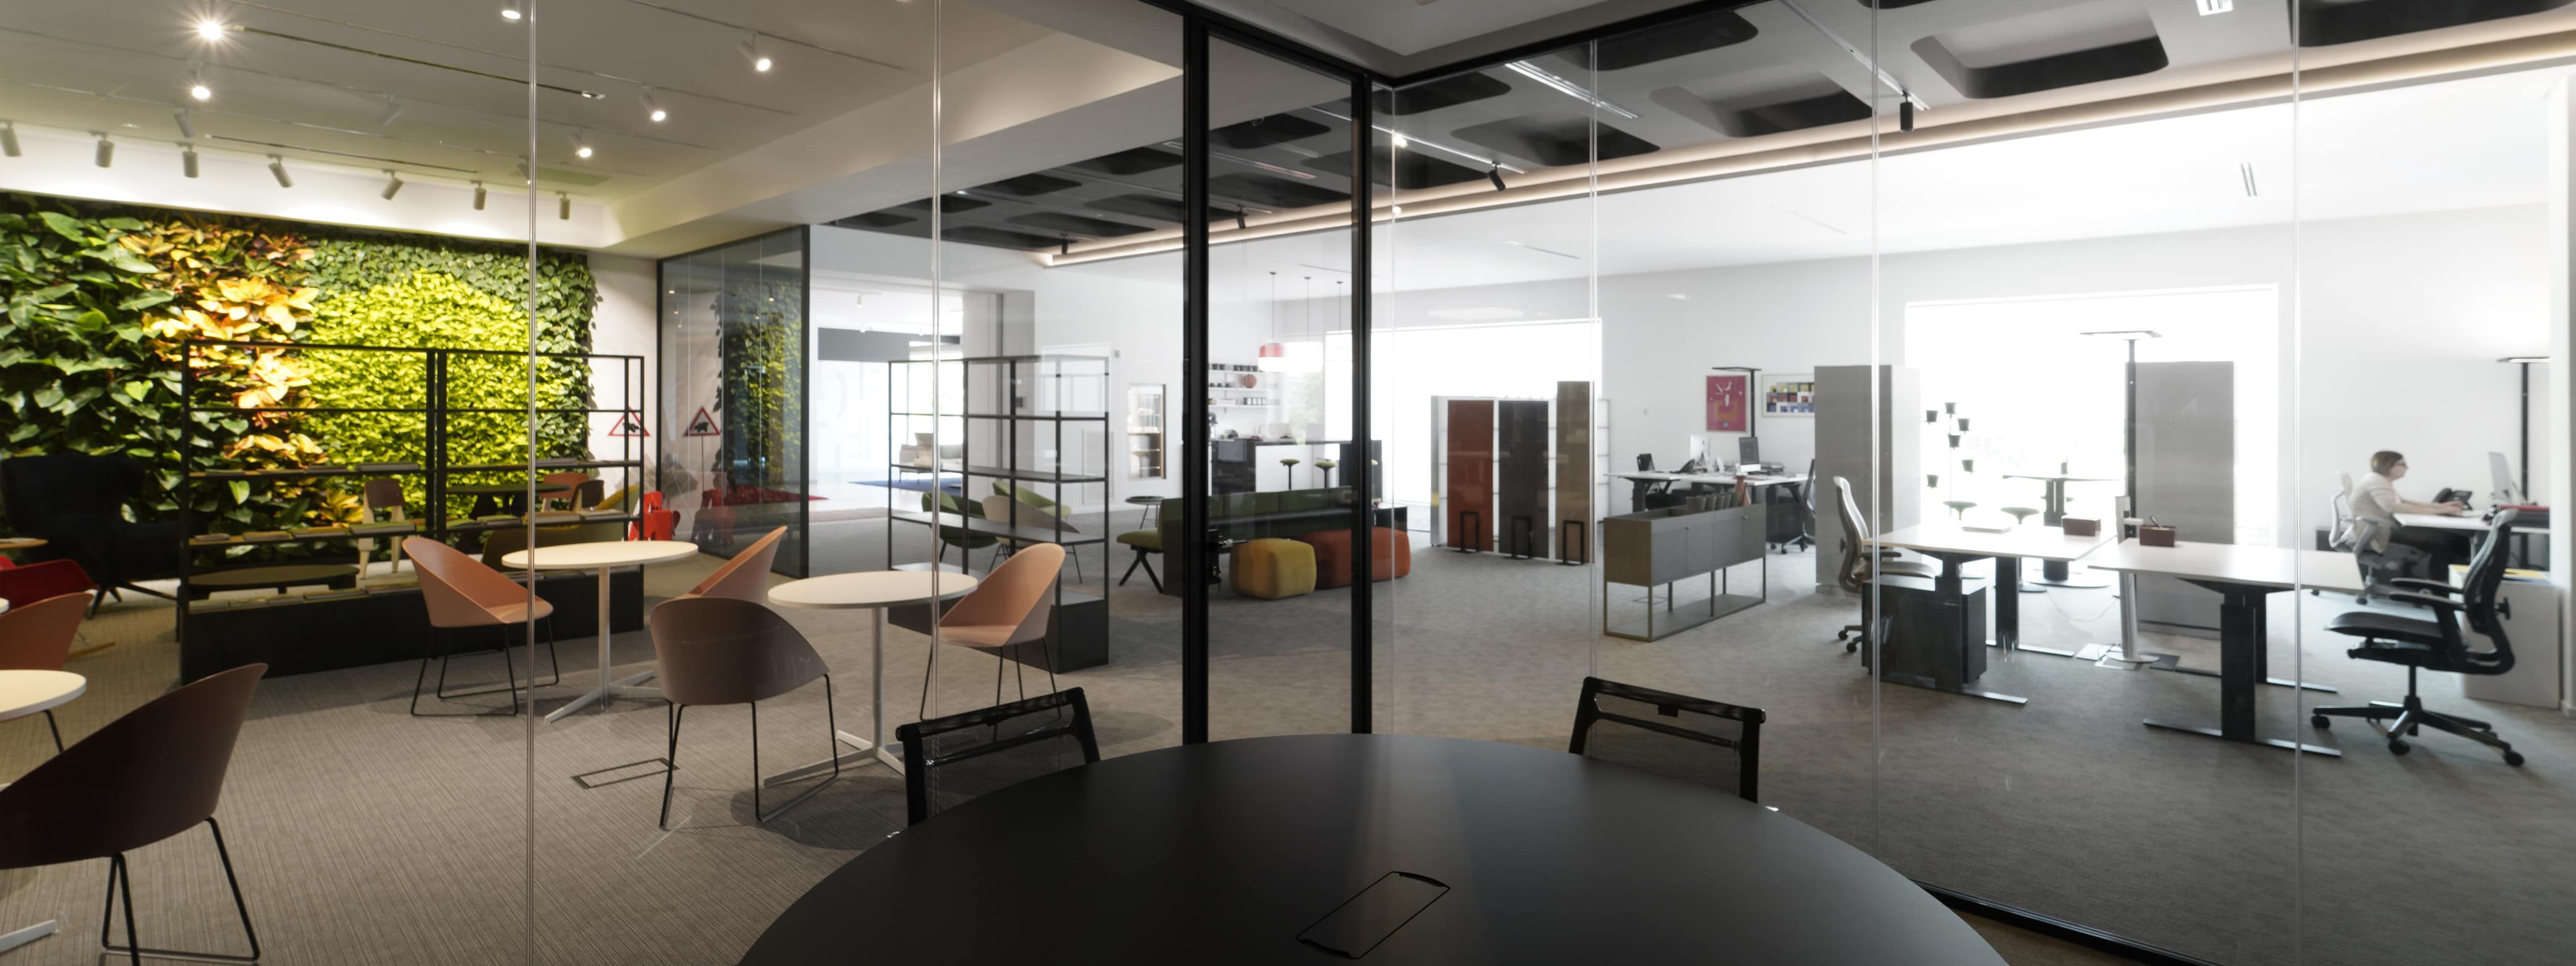 dellachiara-workspaces-ufficio-meeting-room-lounge-attesa-giardino-verticale-slate-parete-doppio-vetro